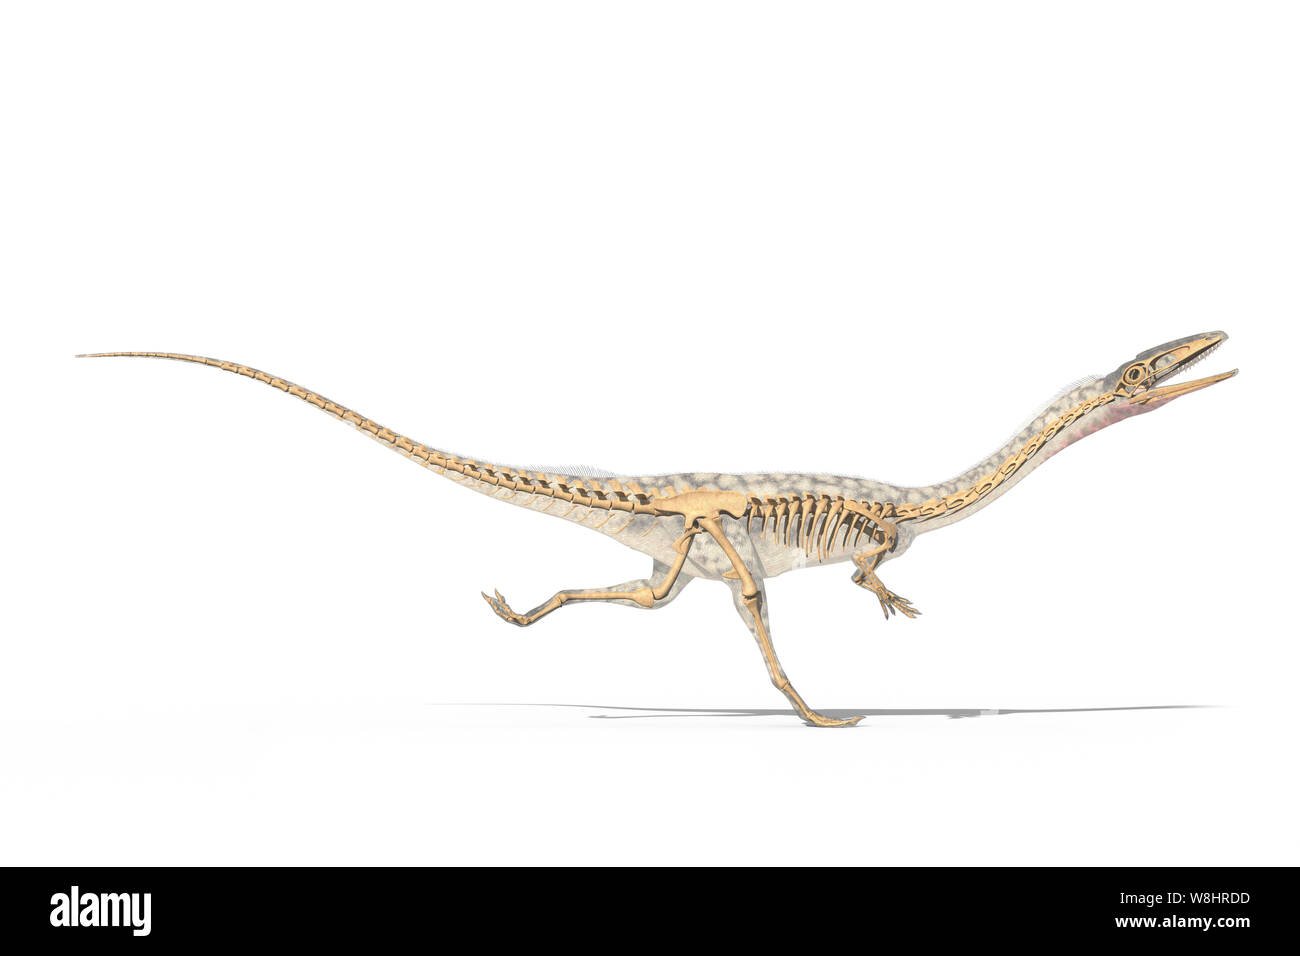 Dinosauro Coelophysis in esecuzione, struttura scheletrica, illustrazione. Questi dinosauri vivevano nel periodo triassico, circa 203-196 milioni di anni fa. Foto Stock